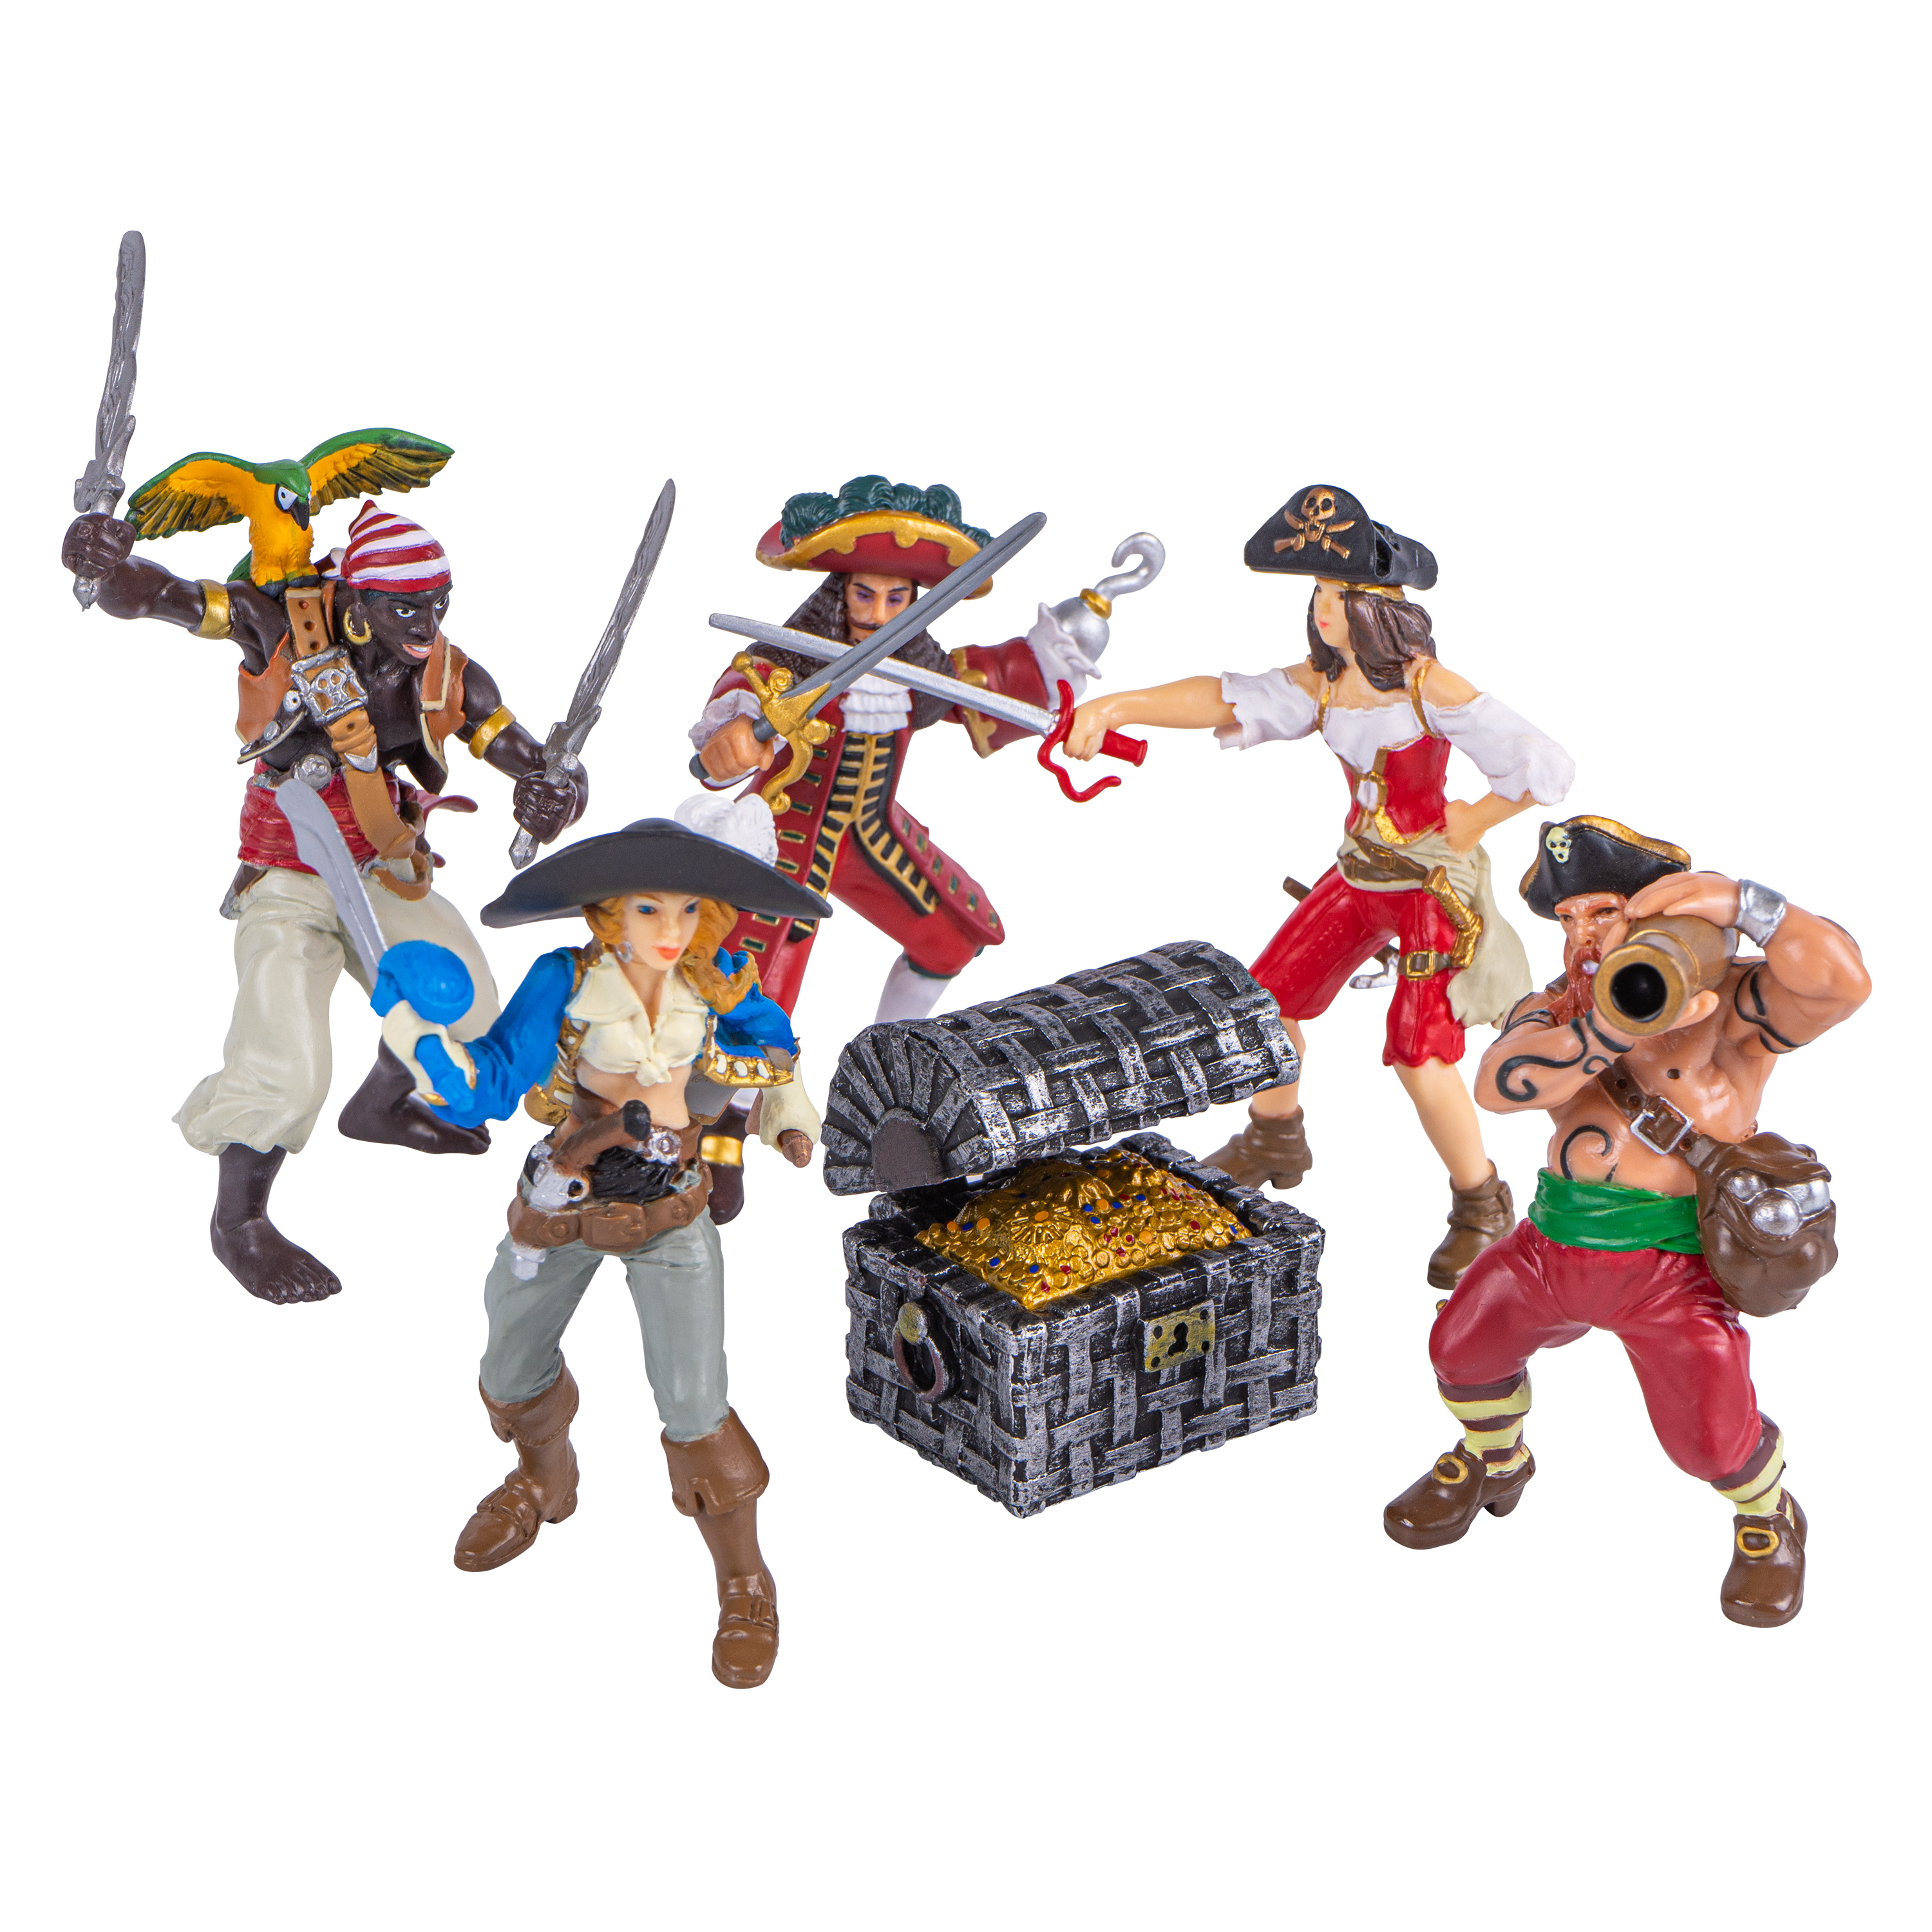 Spielfiguren-Set 'Piraten', 6-teilig